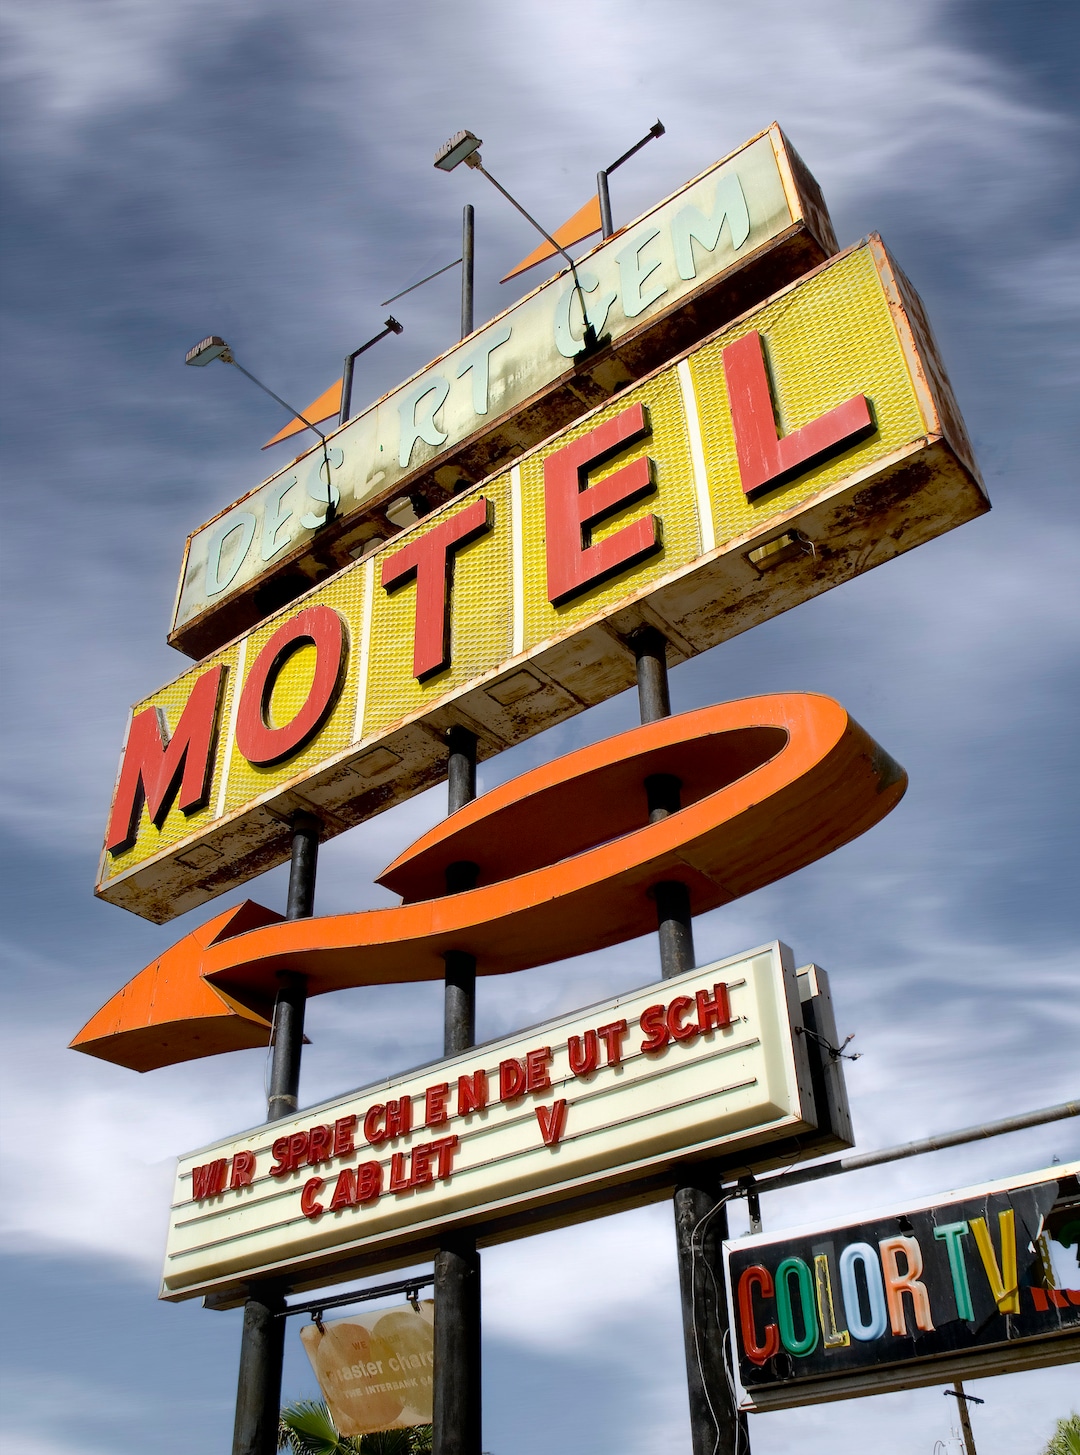 Desert Gem Motel Retro Roadside Motel Vintage Neon Advertising Sign ...